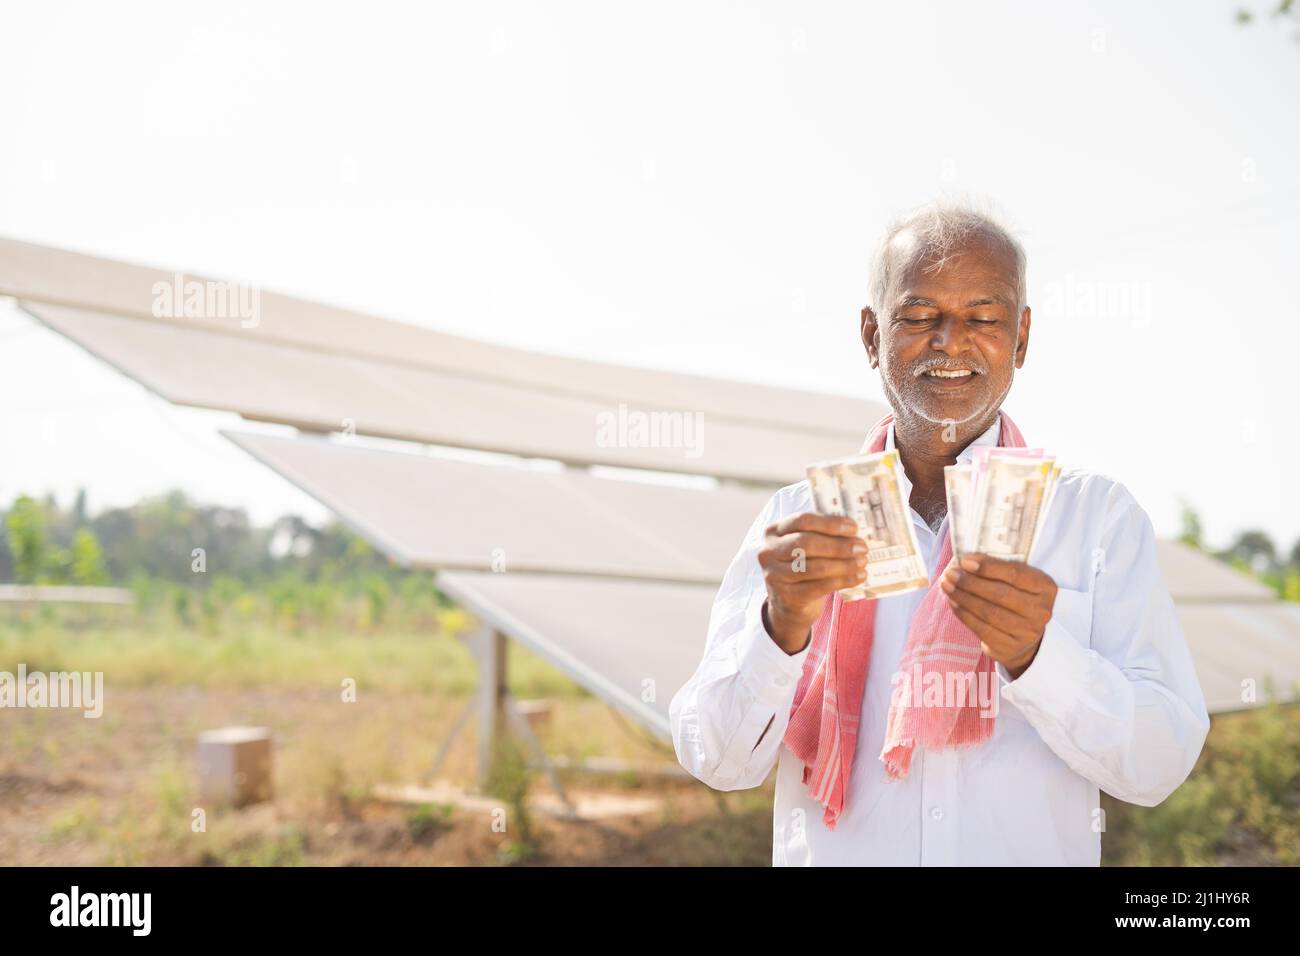 Glücklich lächelnder indischer Landwirt, der Geld couting, während er vor dem Solarpanel auf Ackerland steht - Konzept der Stromeinsparung, Investitionen, Banken Stockfoto